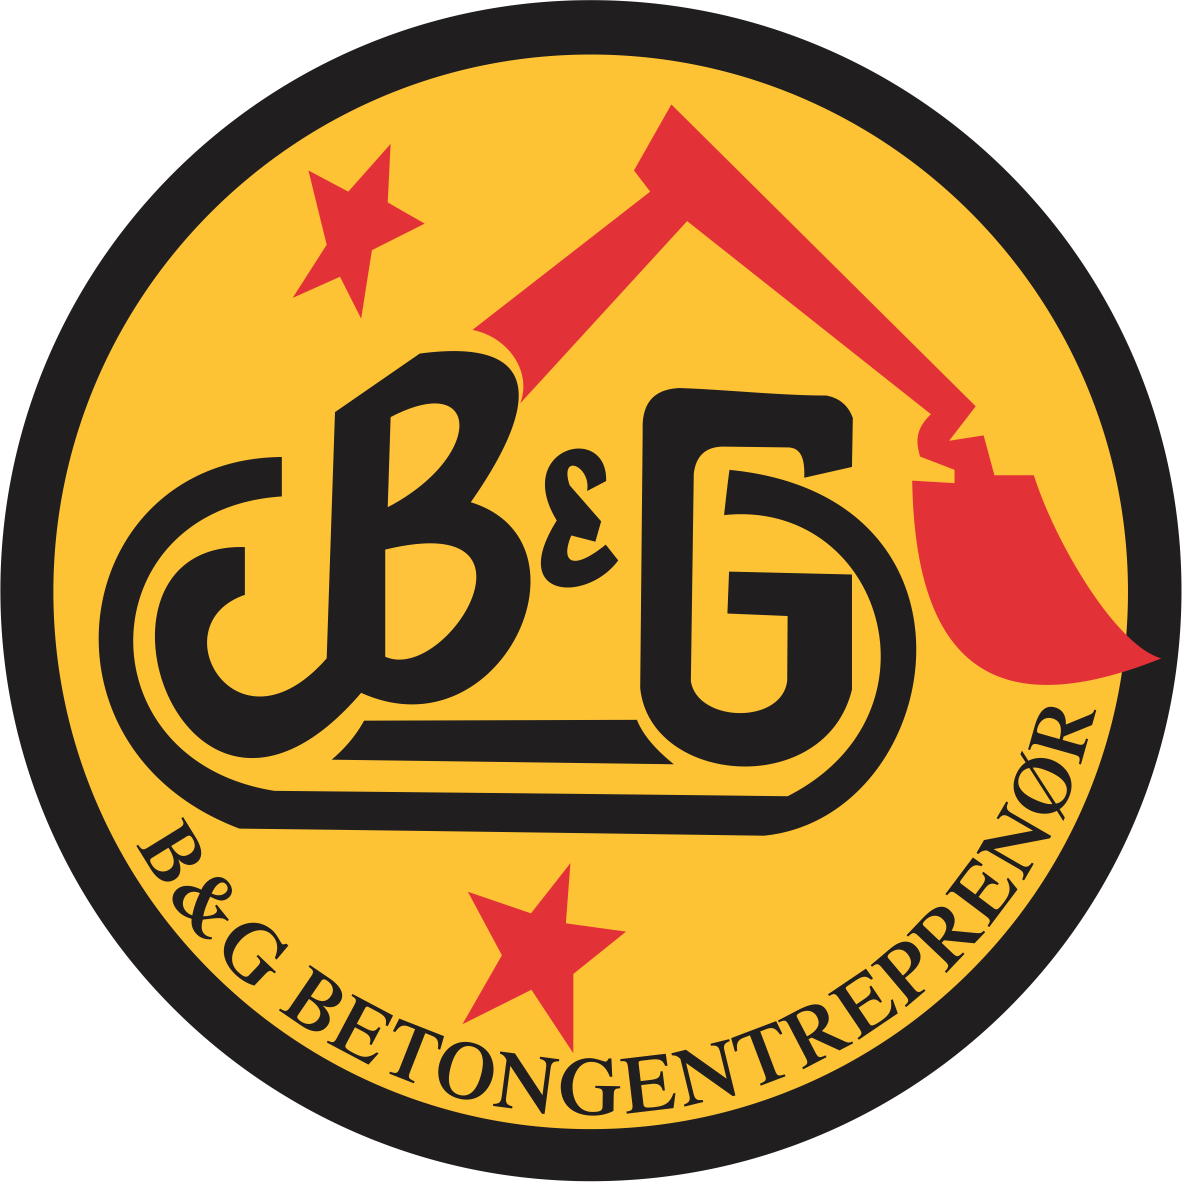 B&G Betongentreprenør